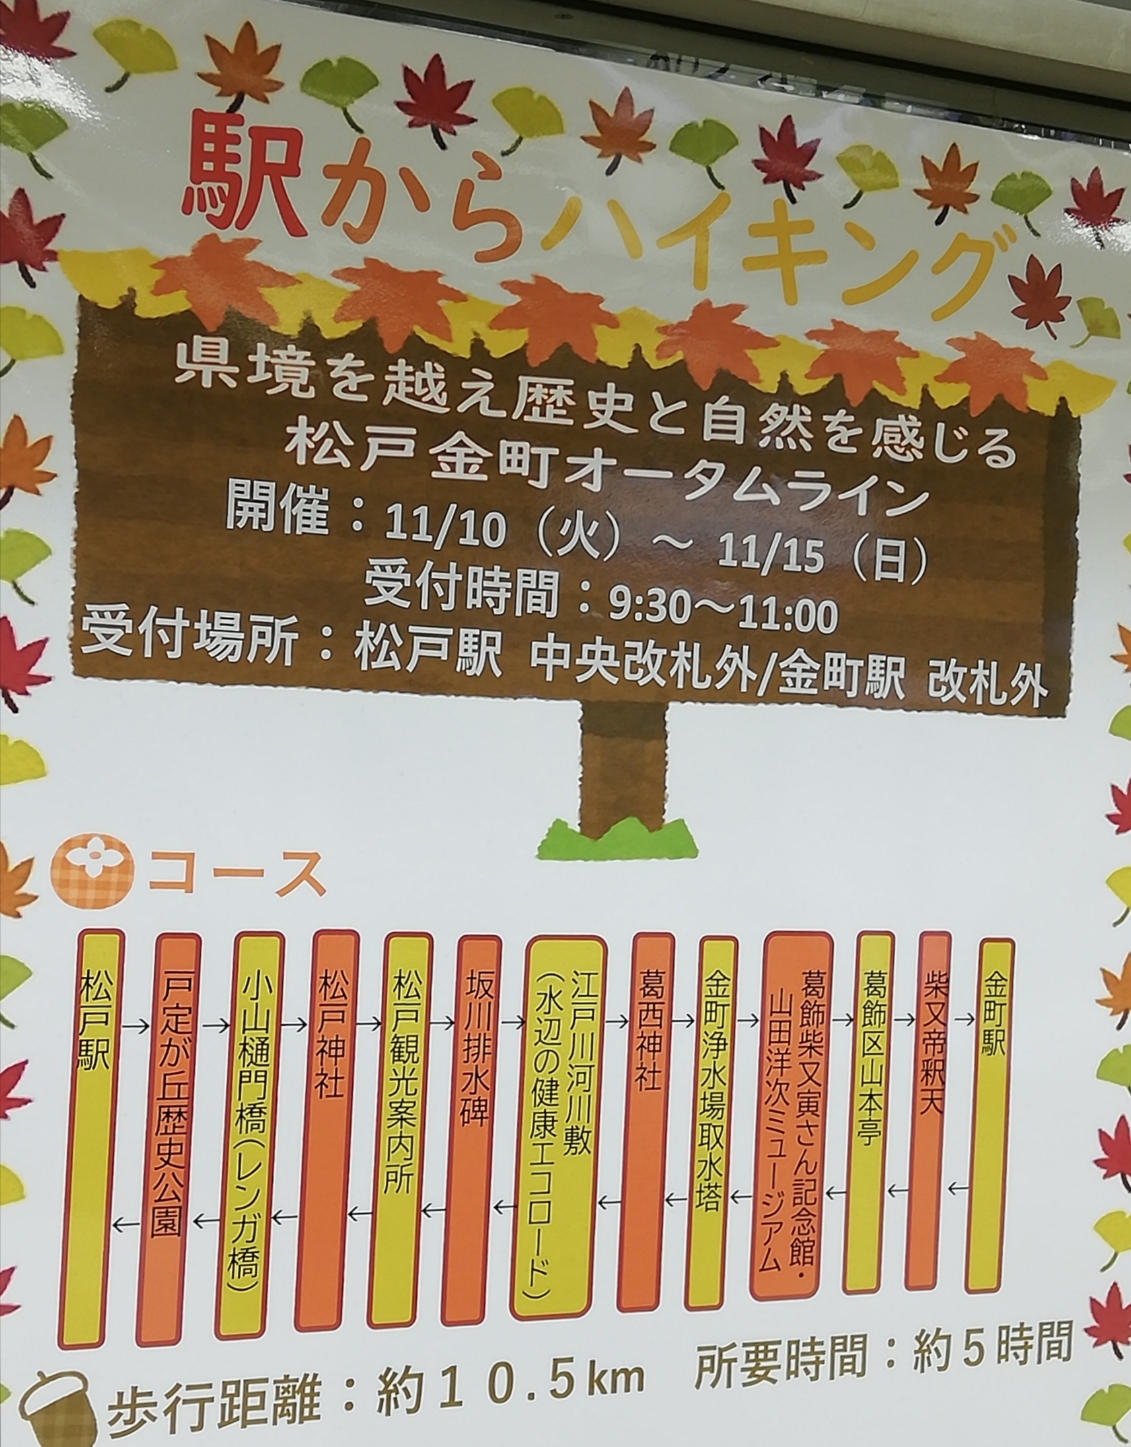 駅からハイキング松戸2020JR